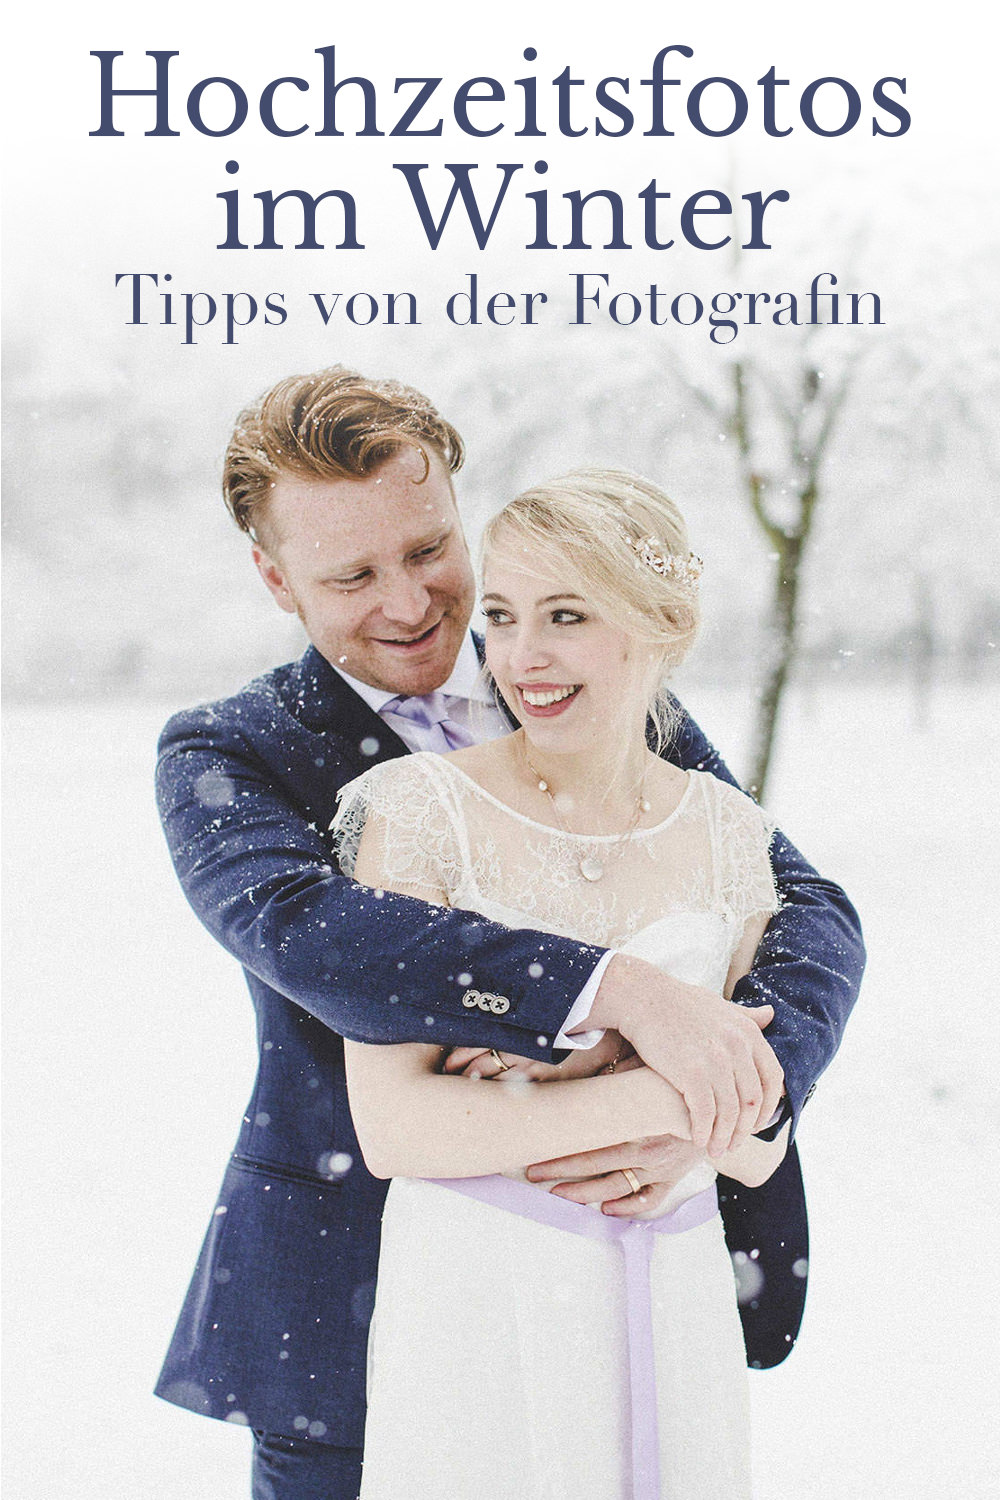 Hochzeitsfotos im Winter - Tipps von der Fotografin